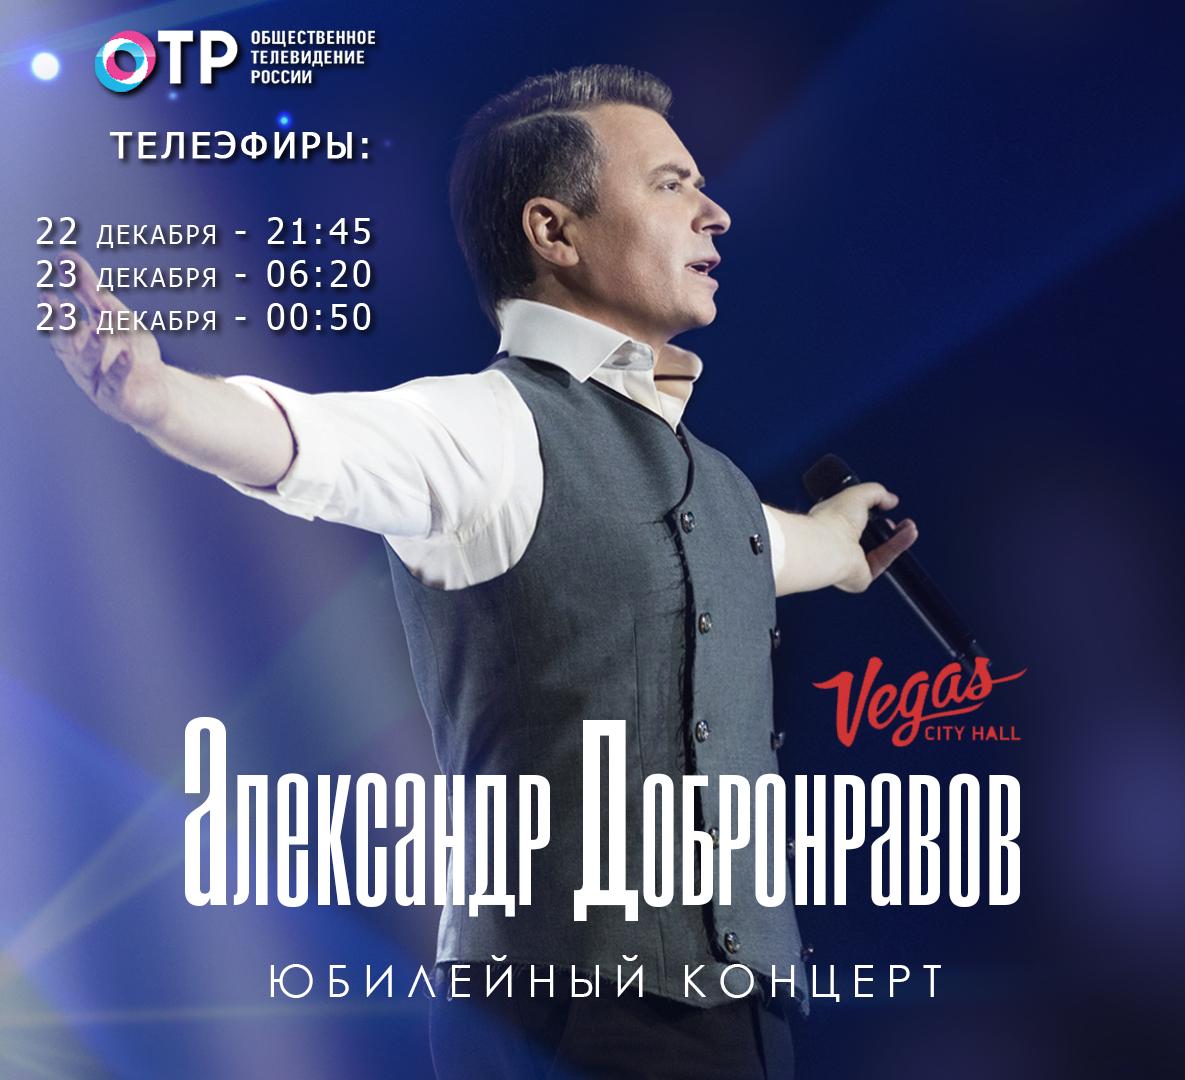 Юбилейный концерт Александра Добронравова покажет ОТР